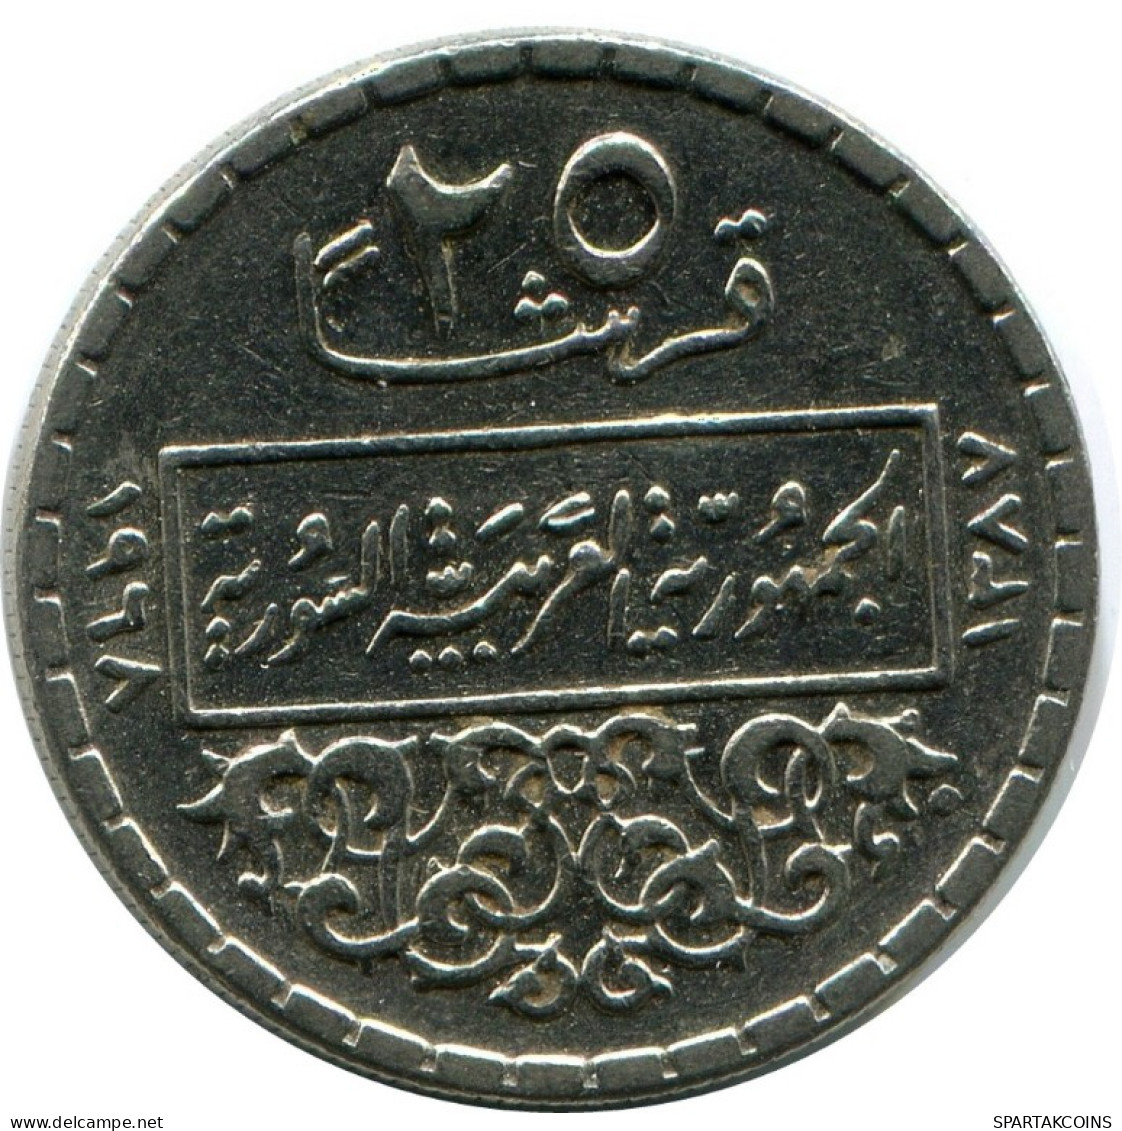 25 QIRSH 1968 SIRIA SYRIA Islámico Moneda #AK300.E.A - Siria